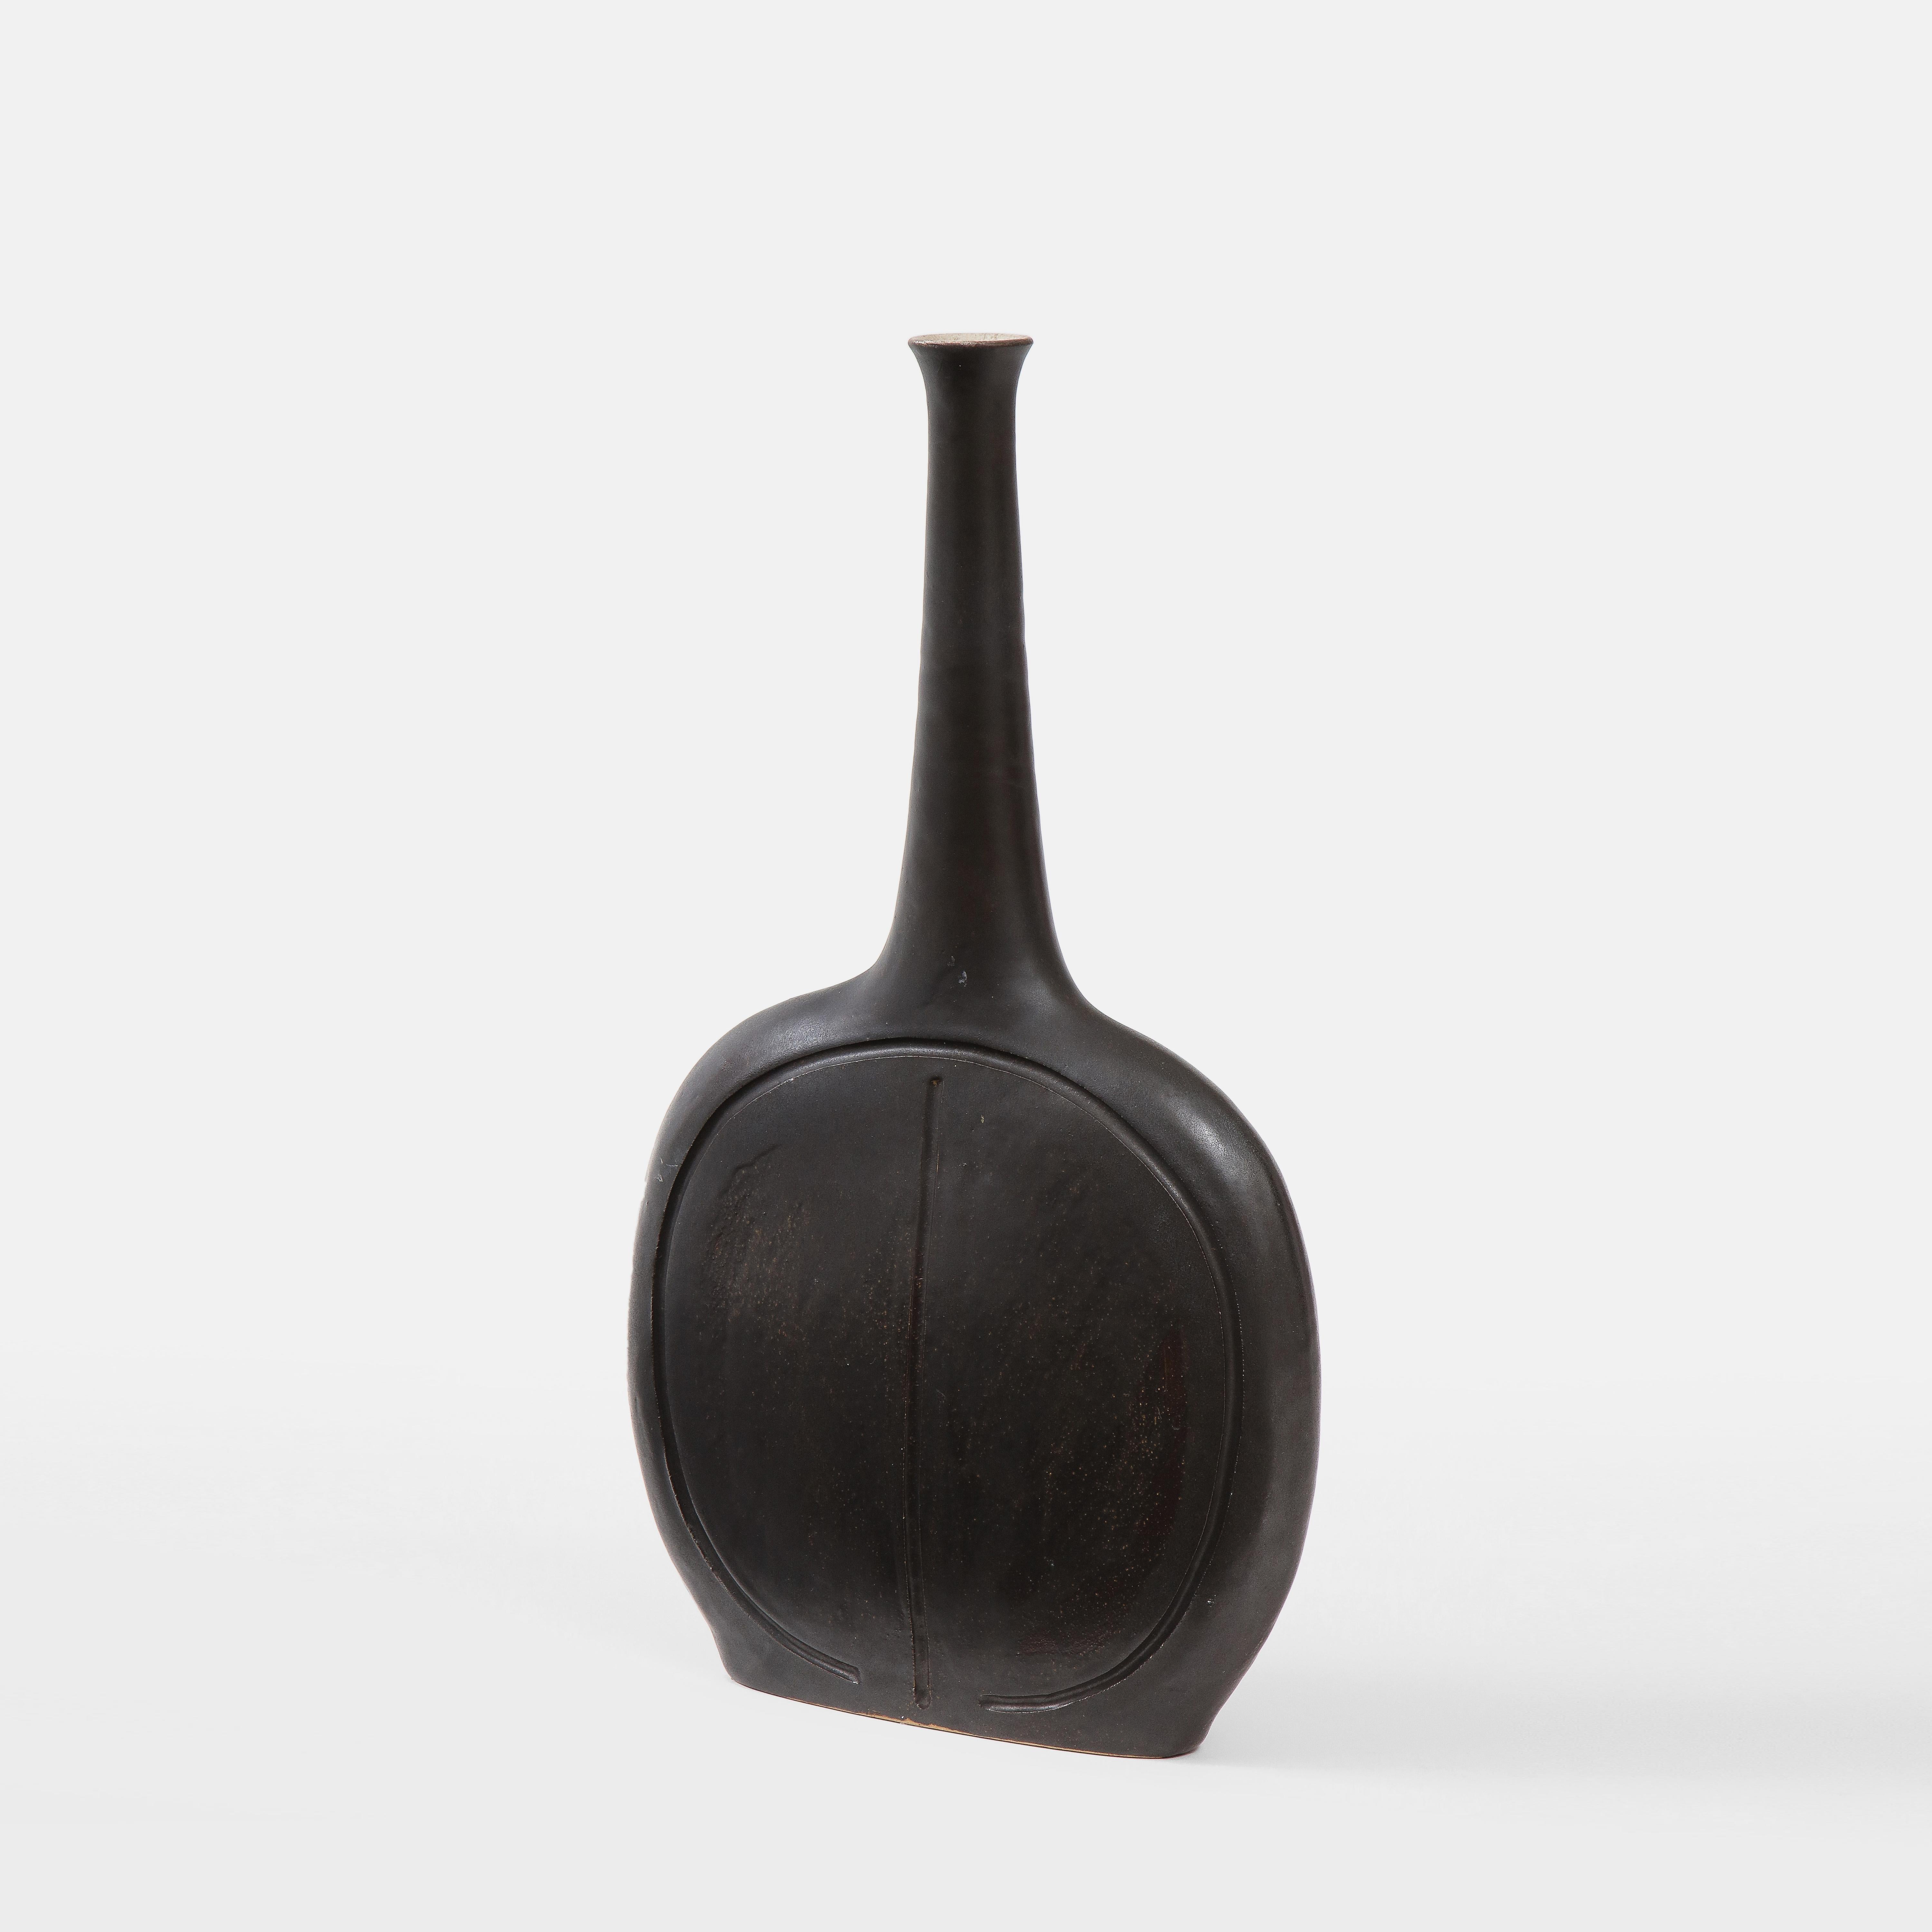 Bruno Gambone Hellschwarz glasierte Keramikflasche oder Vase mit abgeflachten kreisförmigen Körper und länglichem, sich verjüngendem Hals, Italien 1970er Jahre. Der Korpus ist mit einer abstrakten, gravierten Verzierung versehen. Signiert unten